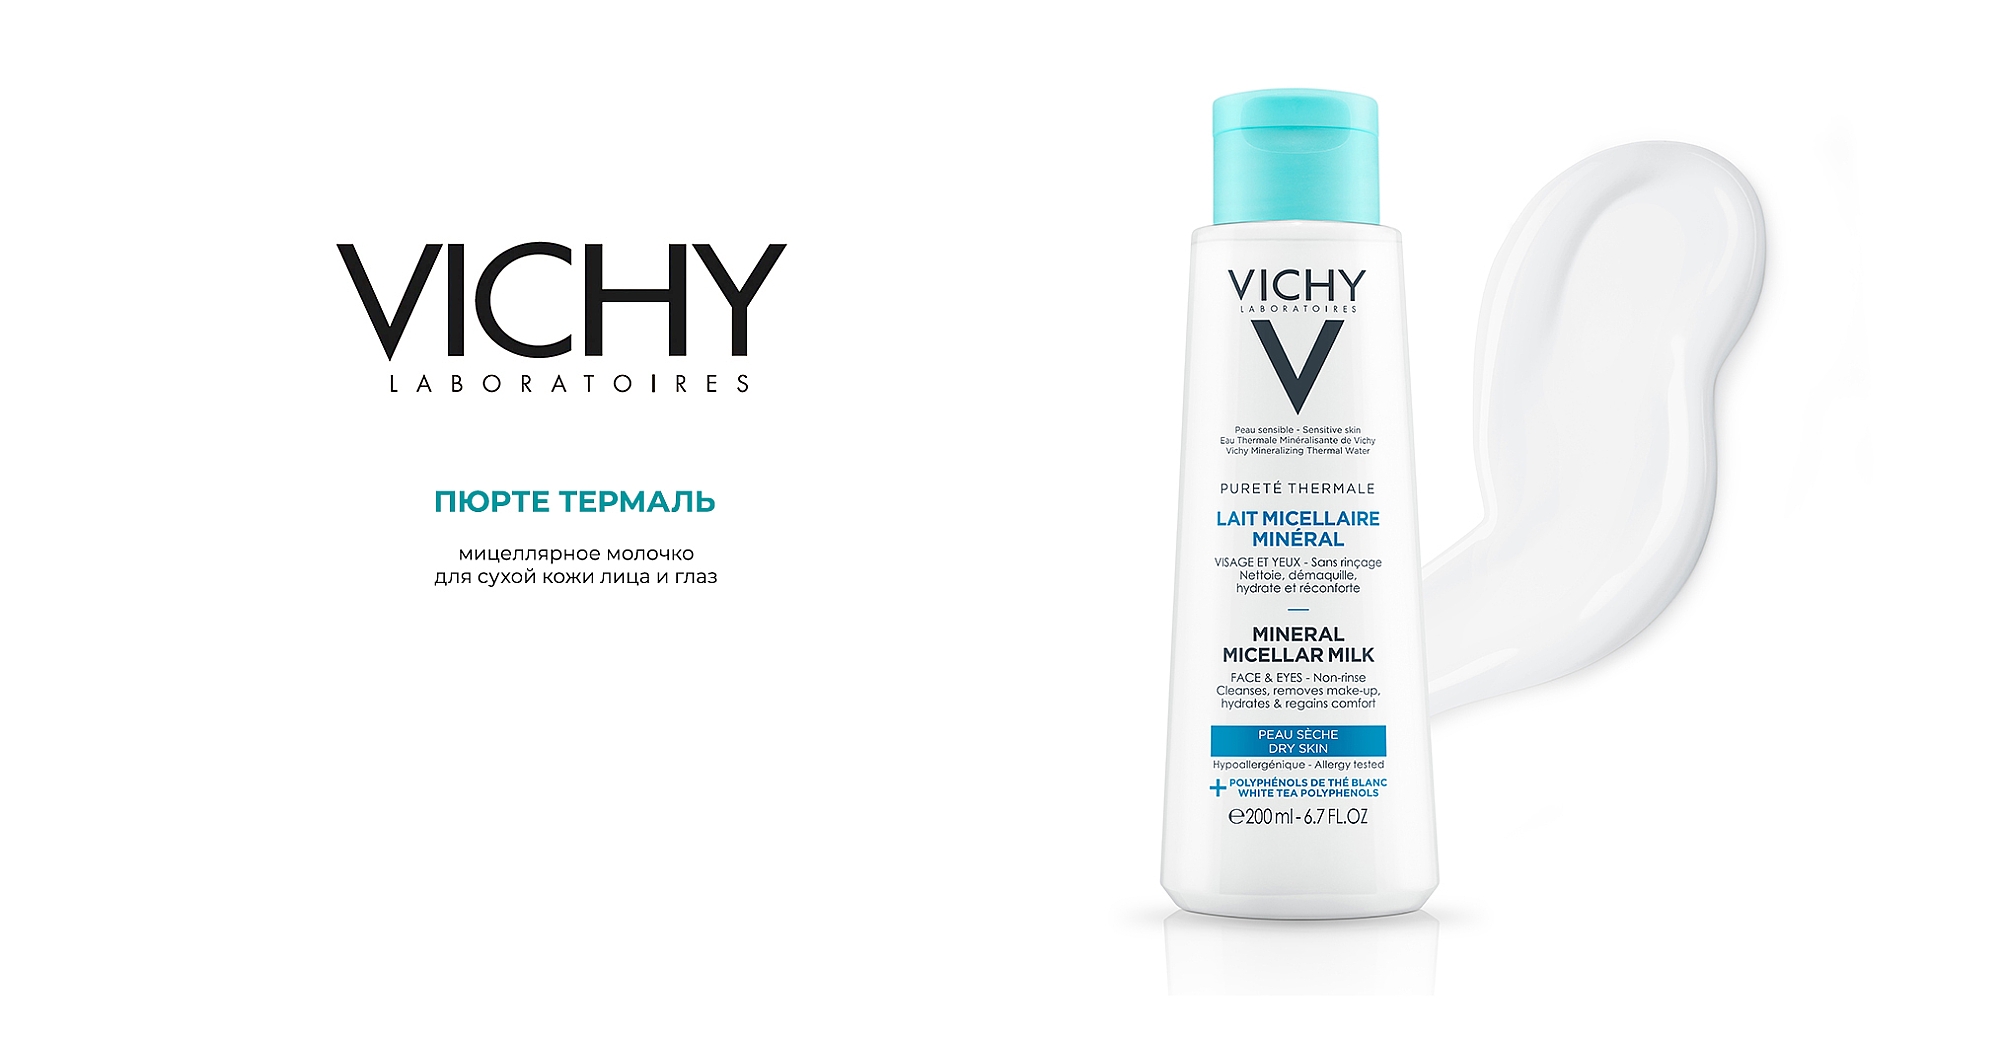 Vichy Purete Thermale Mineral Micellar Milk